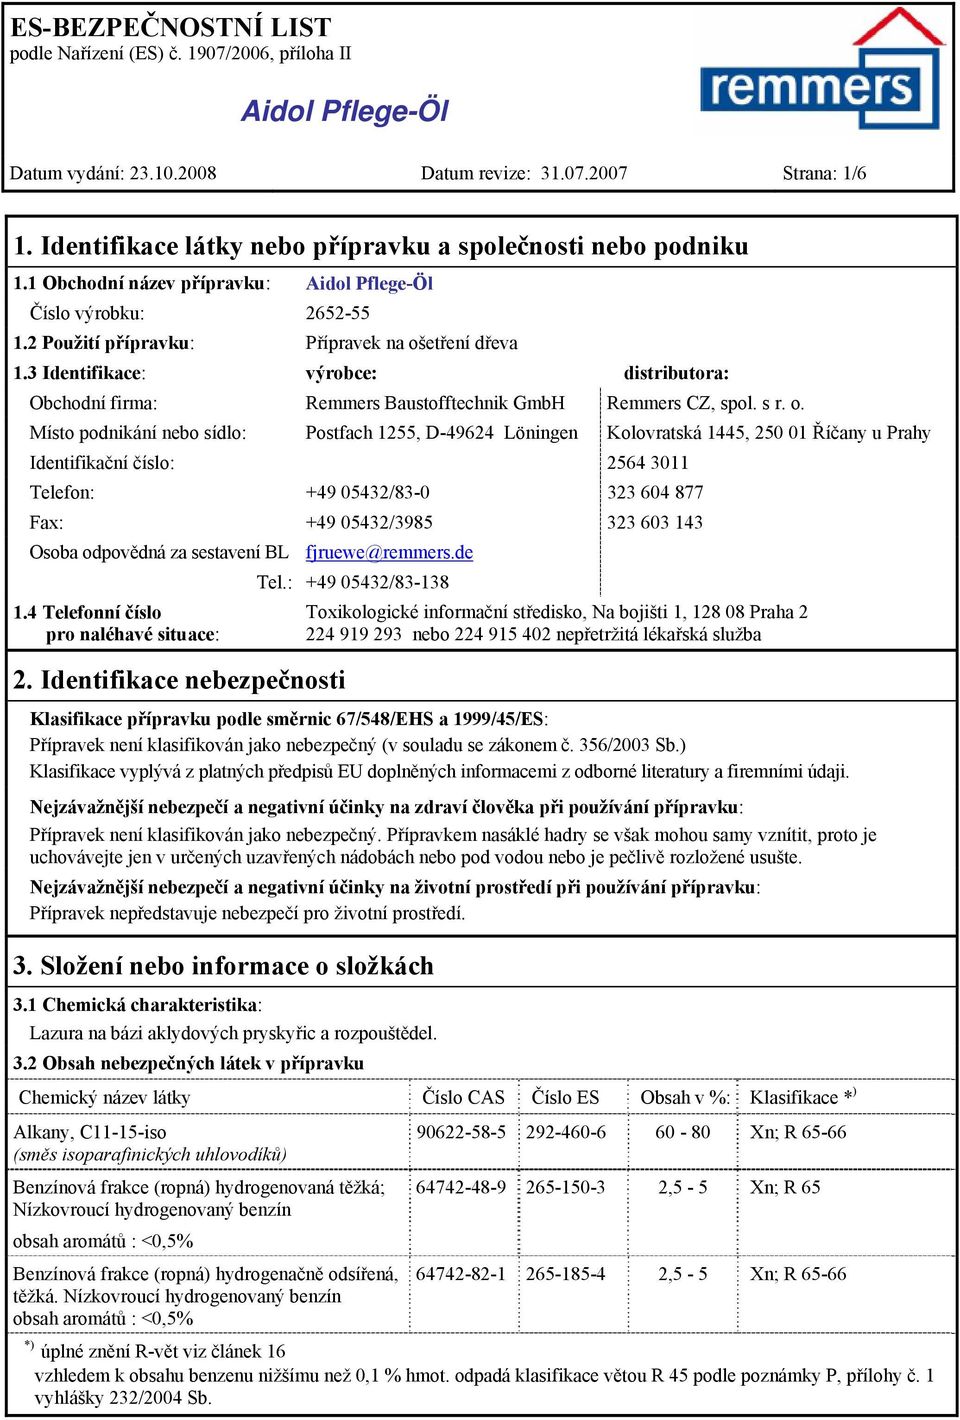 etření dřeva 1.3 Identifikace: výrobce: distributora: Obchodní firma: Remmers Baustofftechnik GmbH Remmers CZ, spol. s r. o.